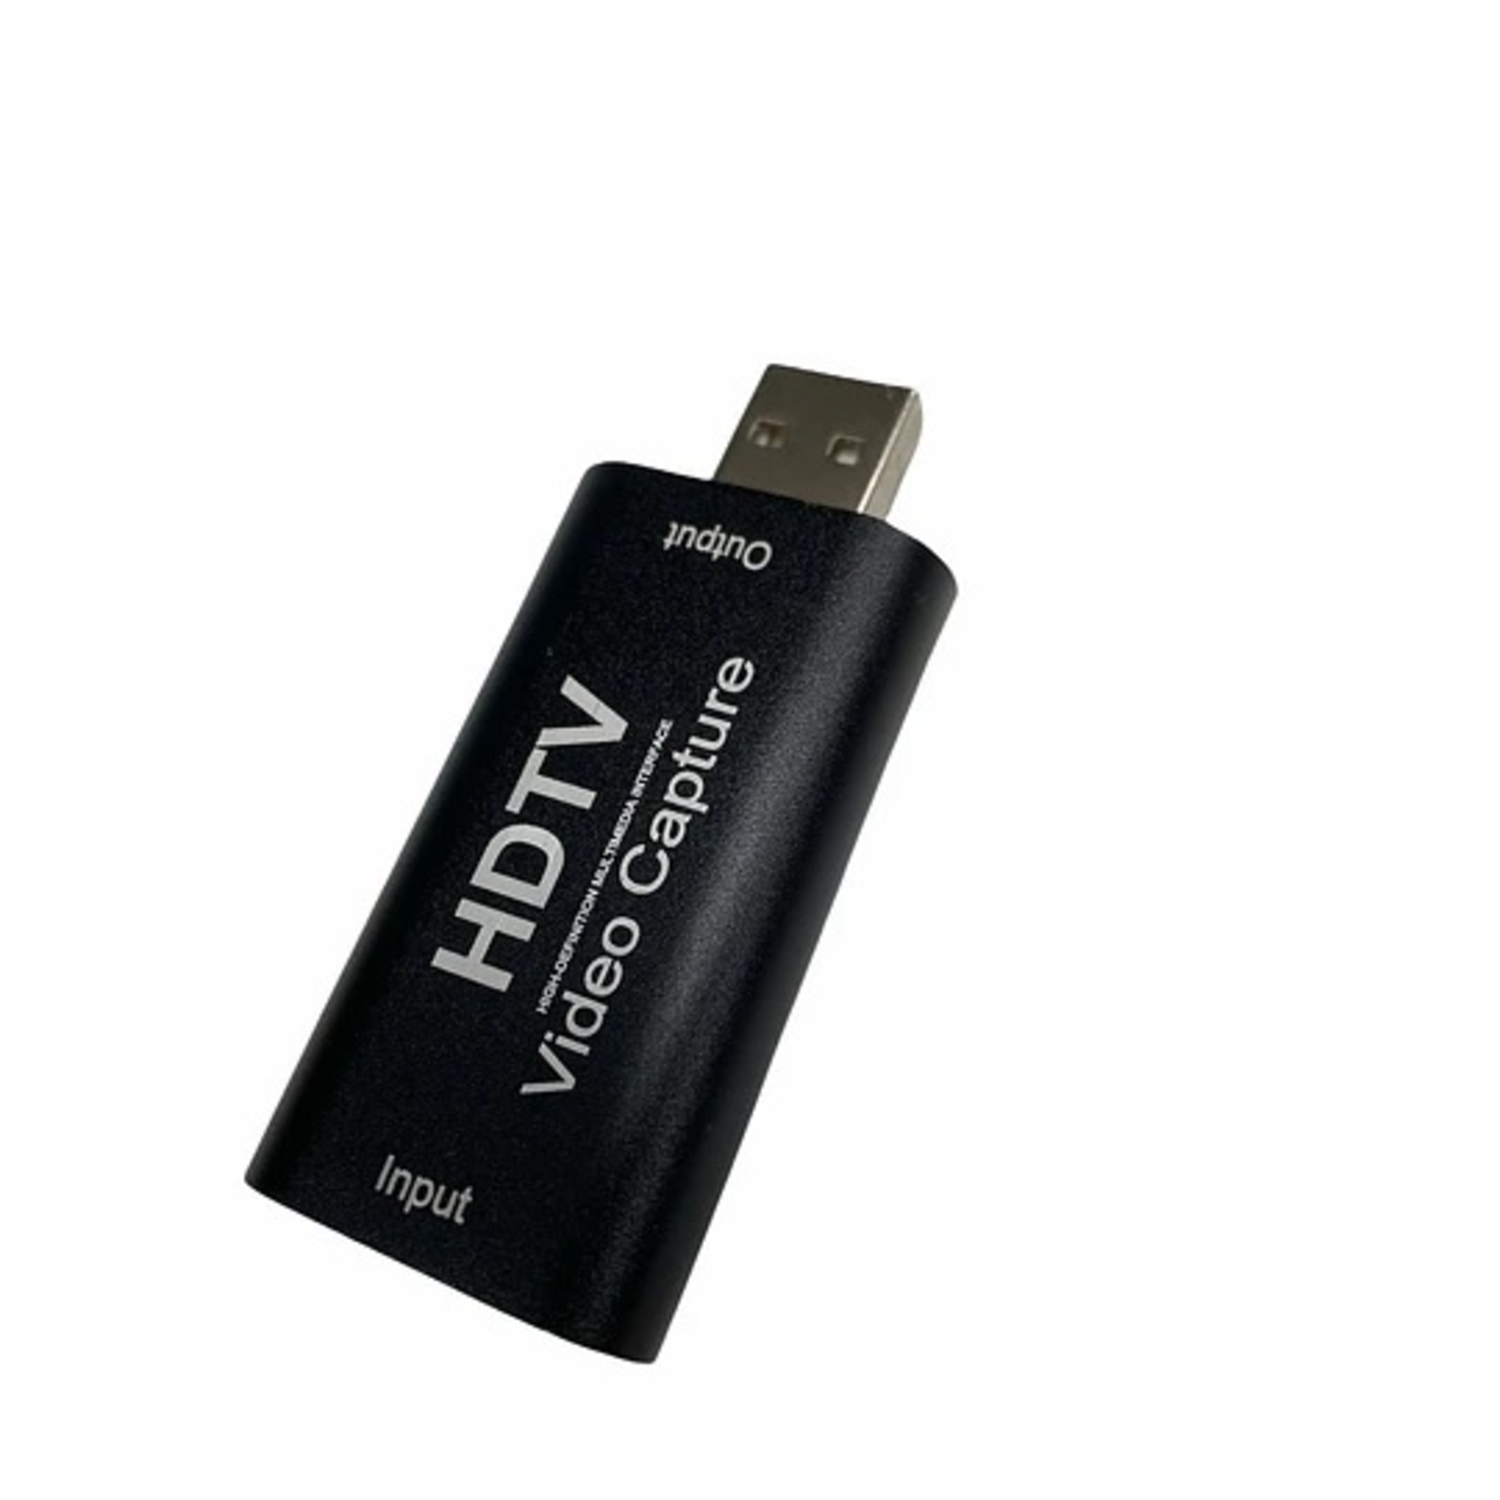 Capturadora de Video USB HDMI FHD 1080P 30HZ Youtuber